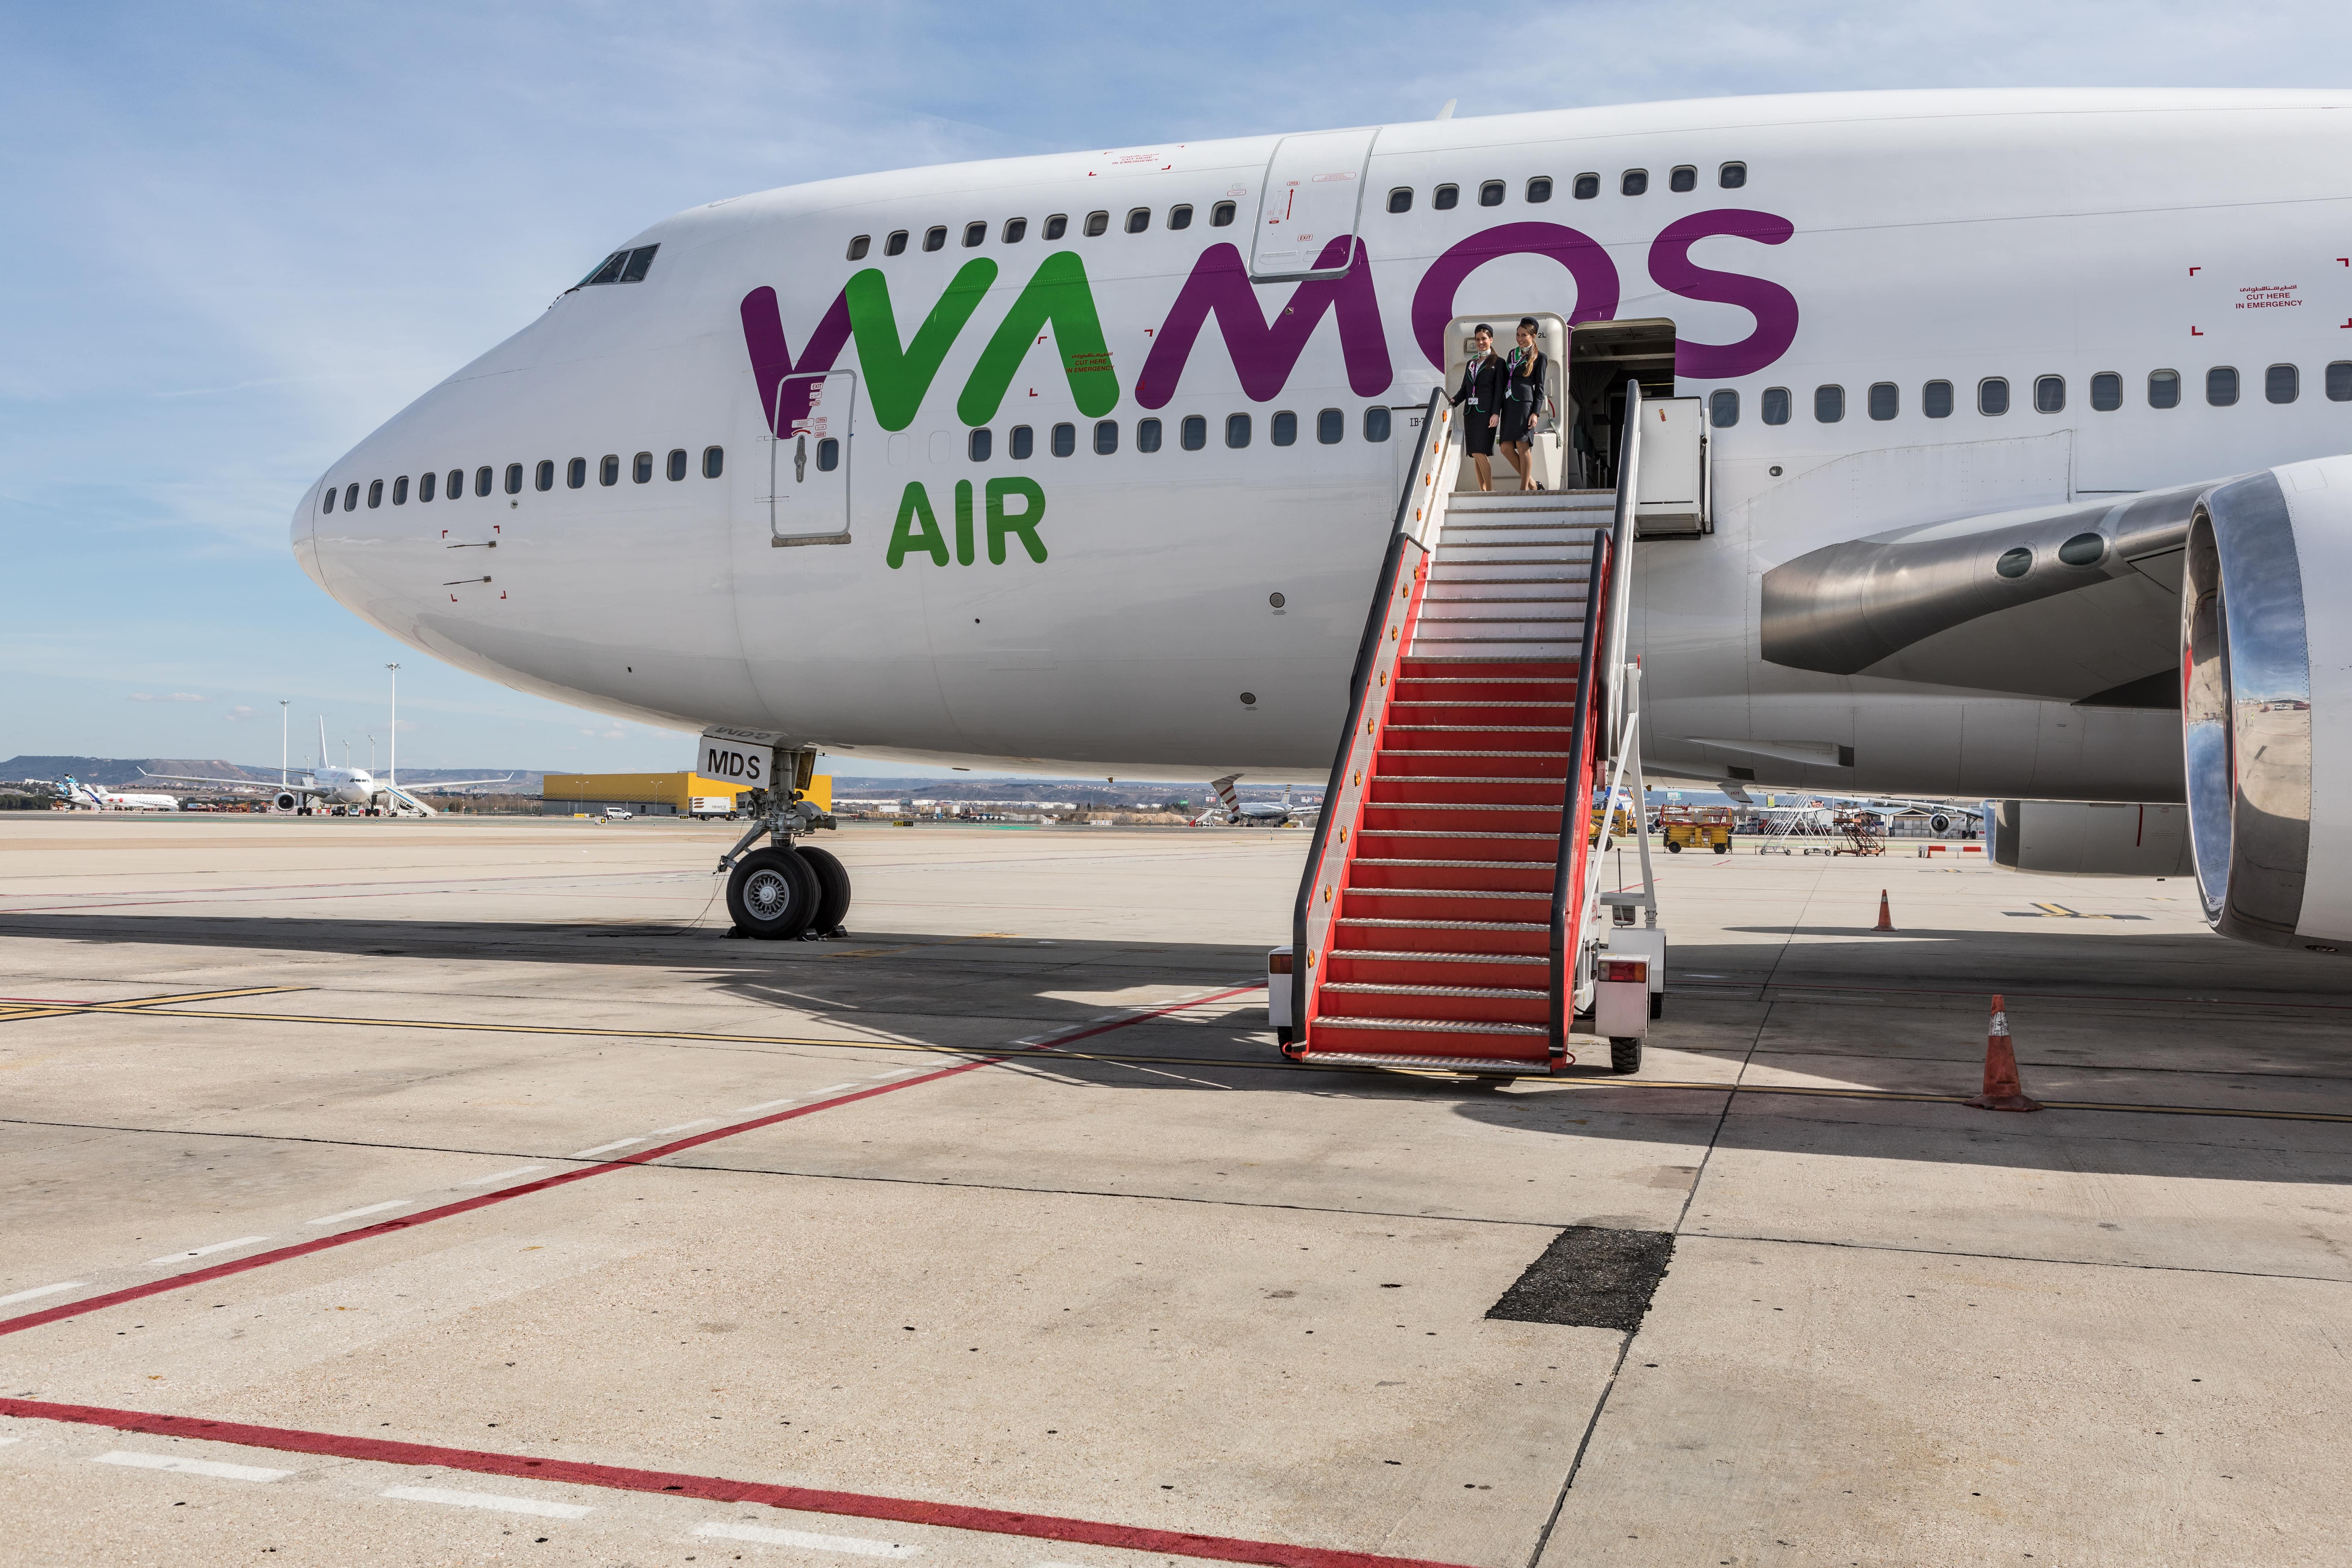 Información que Wamos Air suministra a sus pasajeros